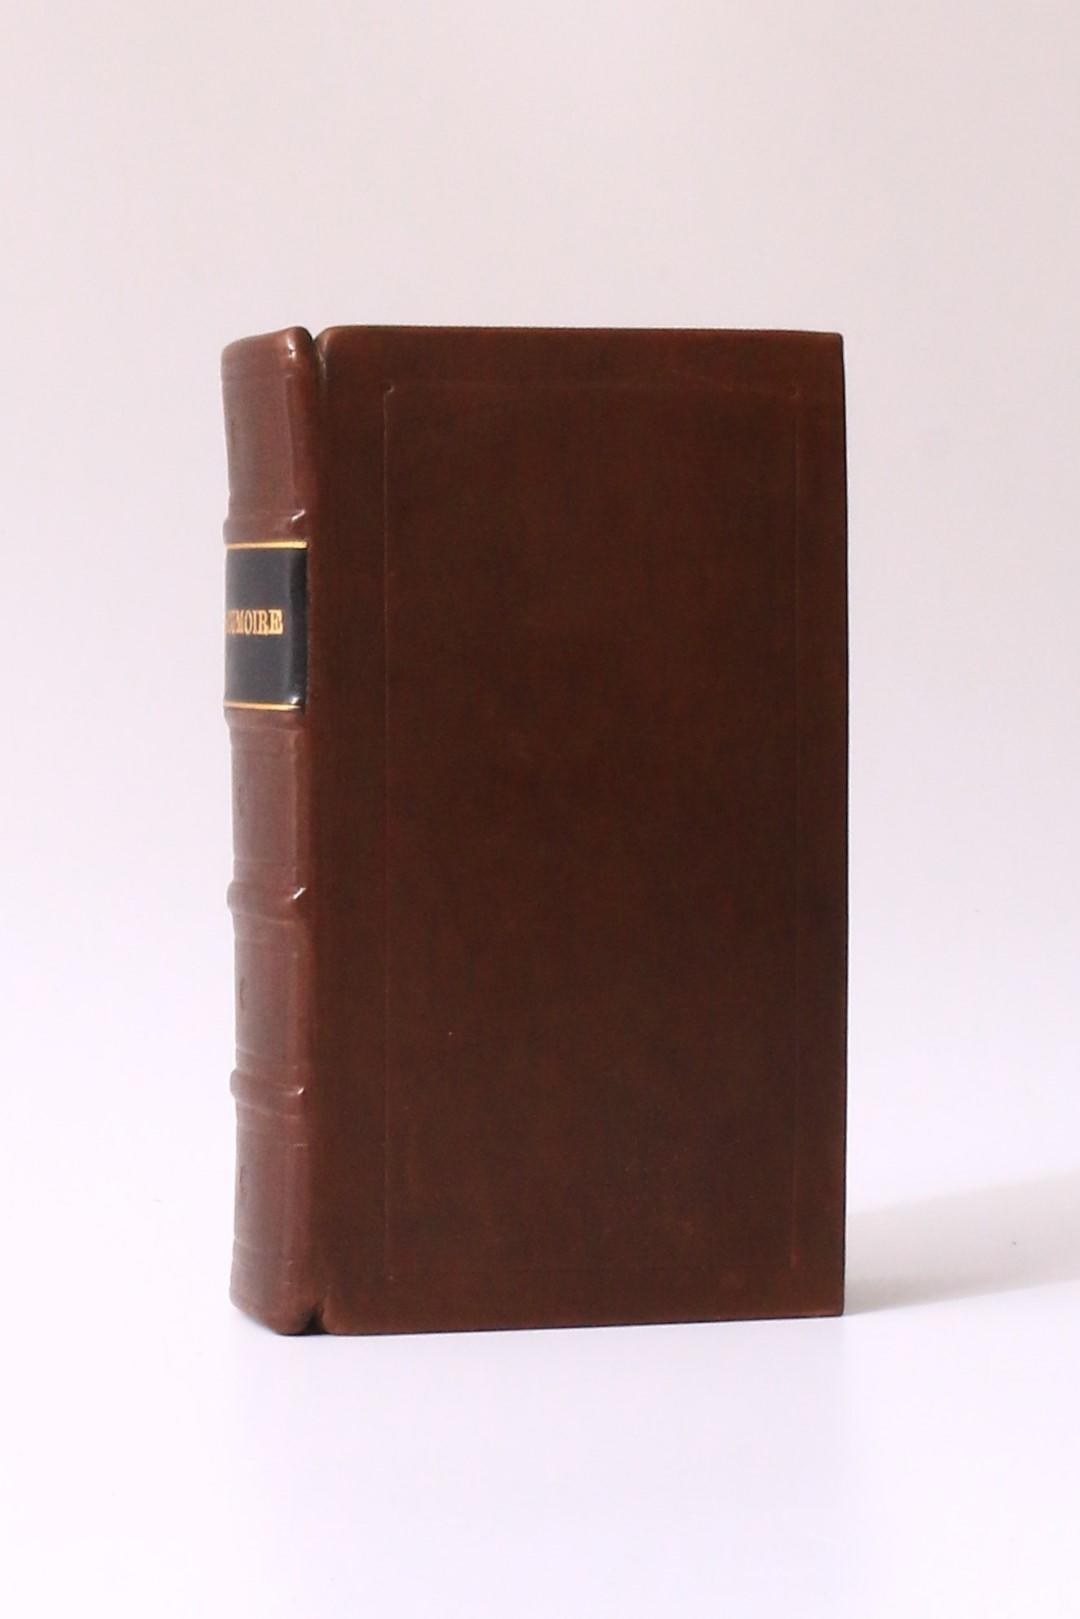 Claude Prosper Jolyot de Cr?billon [Cr?billon fils] - L'ecumoire, Histoire Japonoise [actually Tanzai et Neadarne] - No Publisher, 1735, Second Edition.